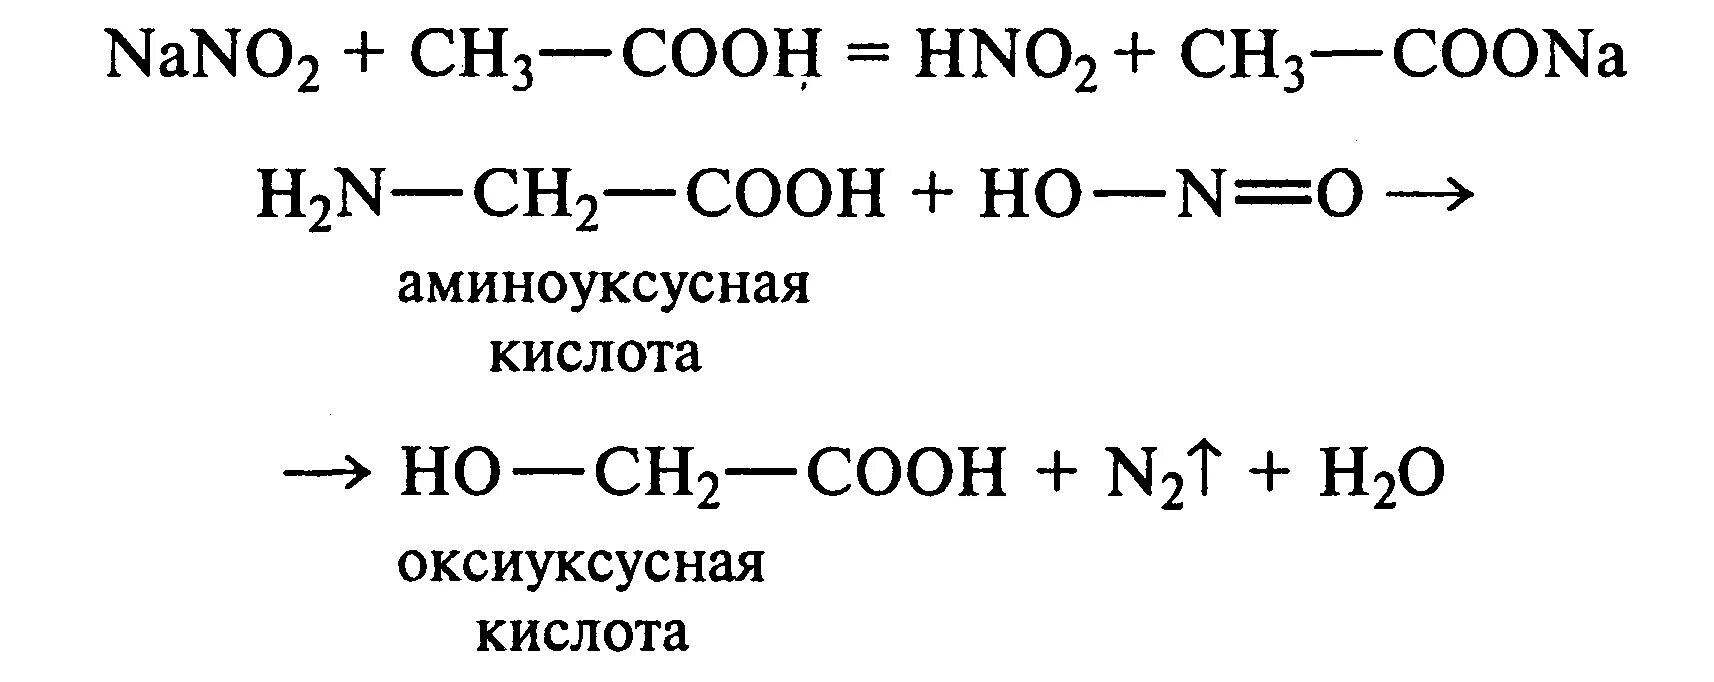 Аминоуксусная кислота hno3. Глицин нитрит натрия уксусная кислота. Глицин нитрит натрия уксусная кислота реакция. Глицин hno3. Аминоуксусная кислота хлорид натрия